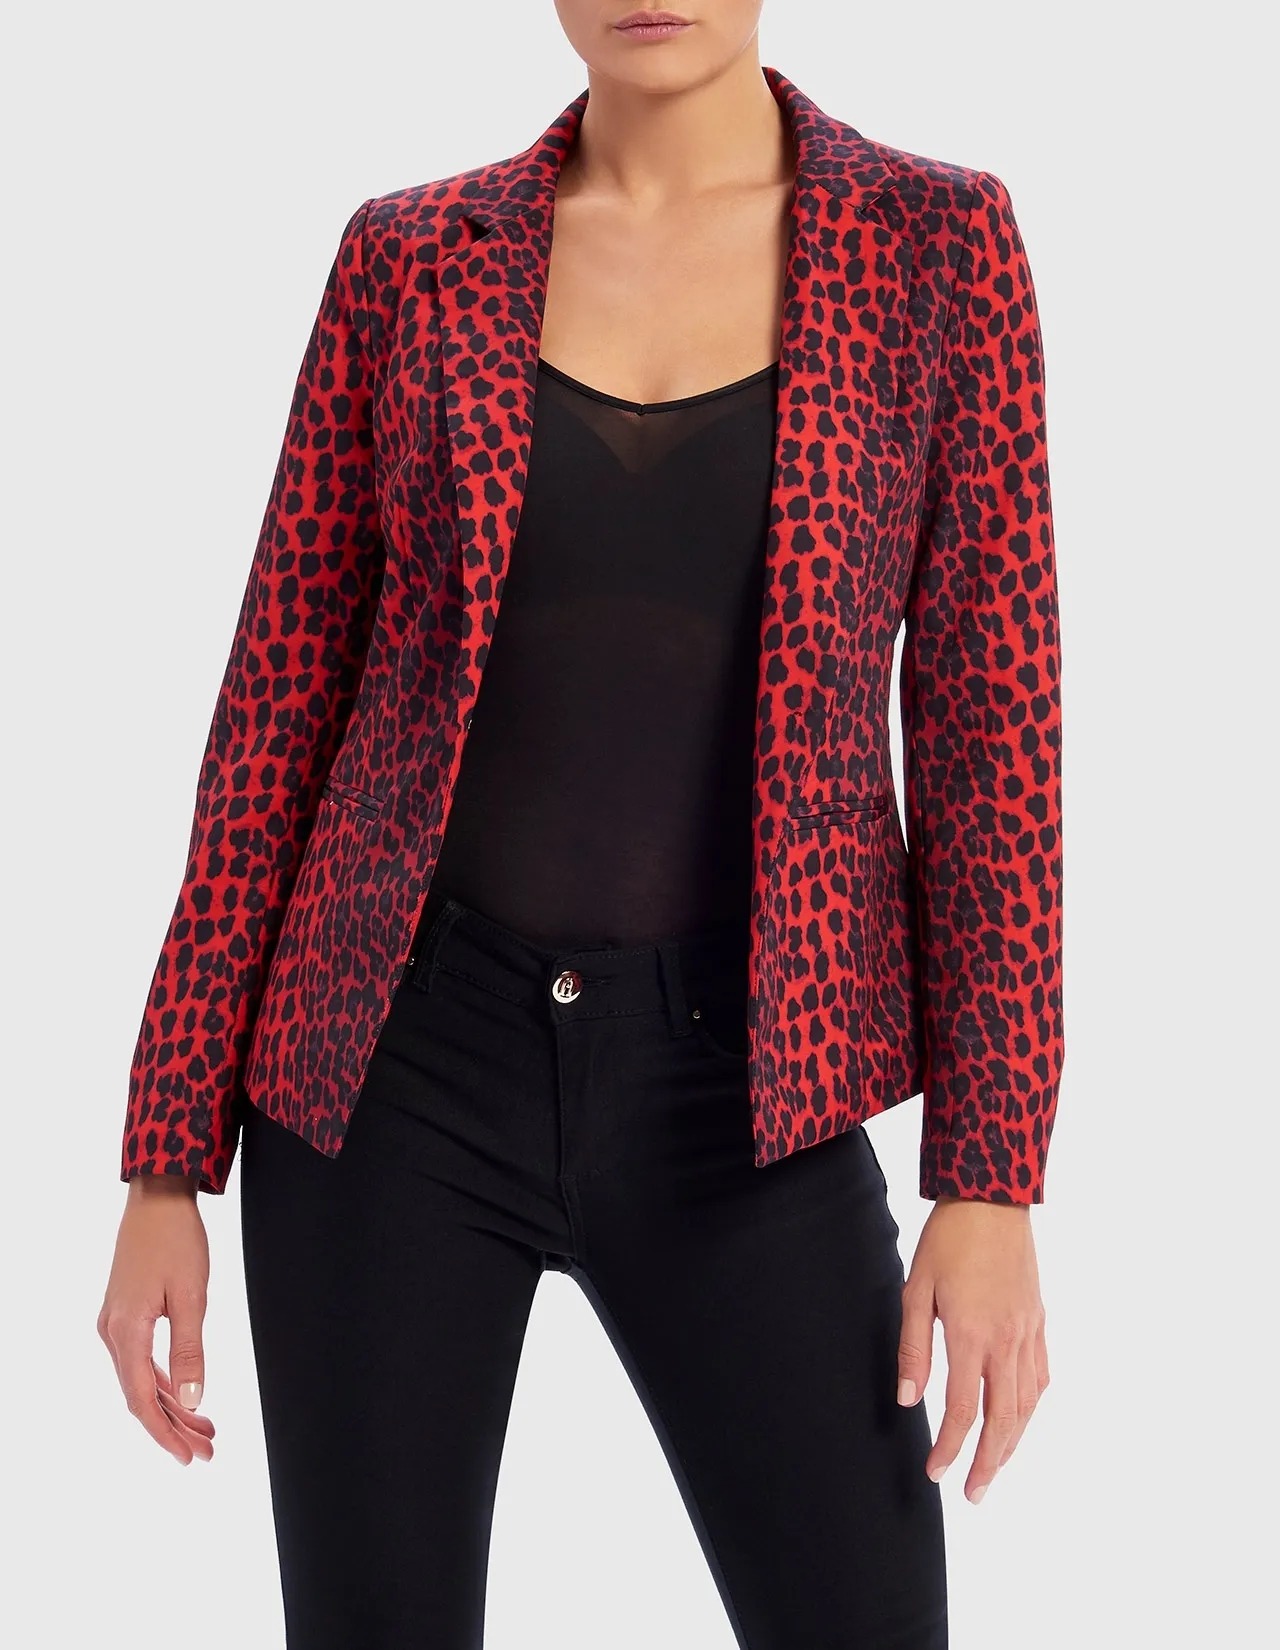 The Best Ways to Wear a Leopard Blazer - LatestBlazer.com